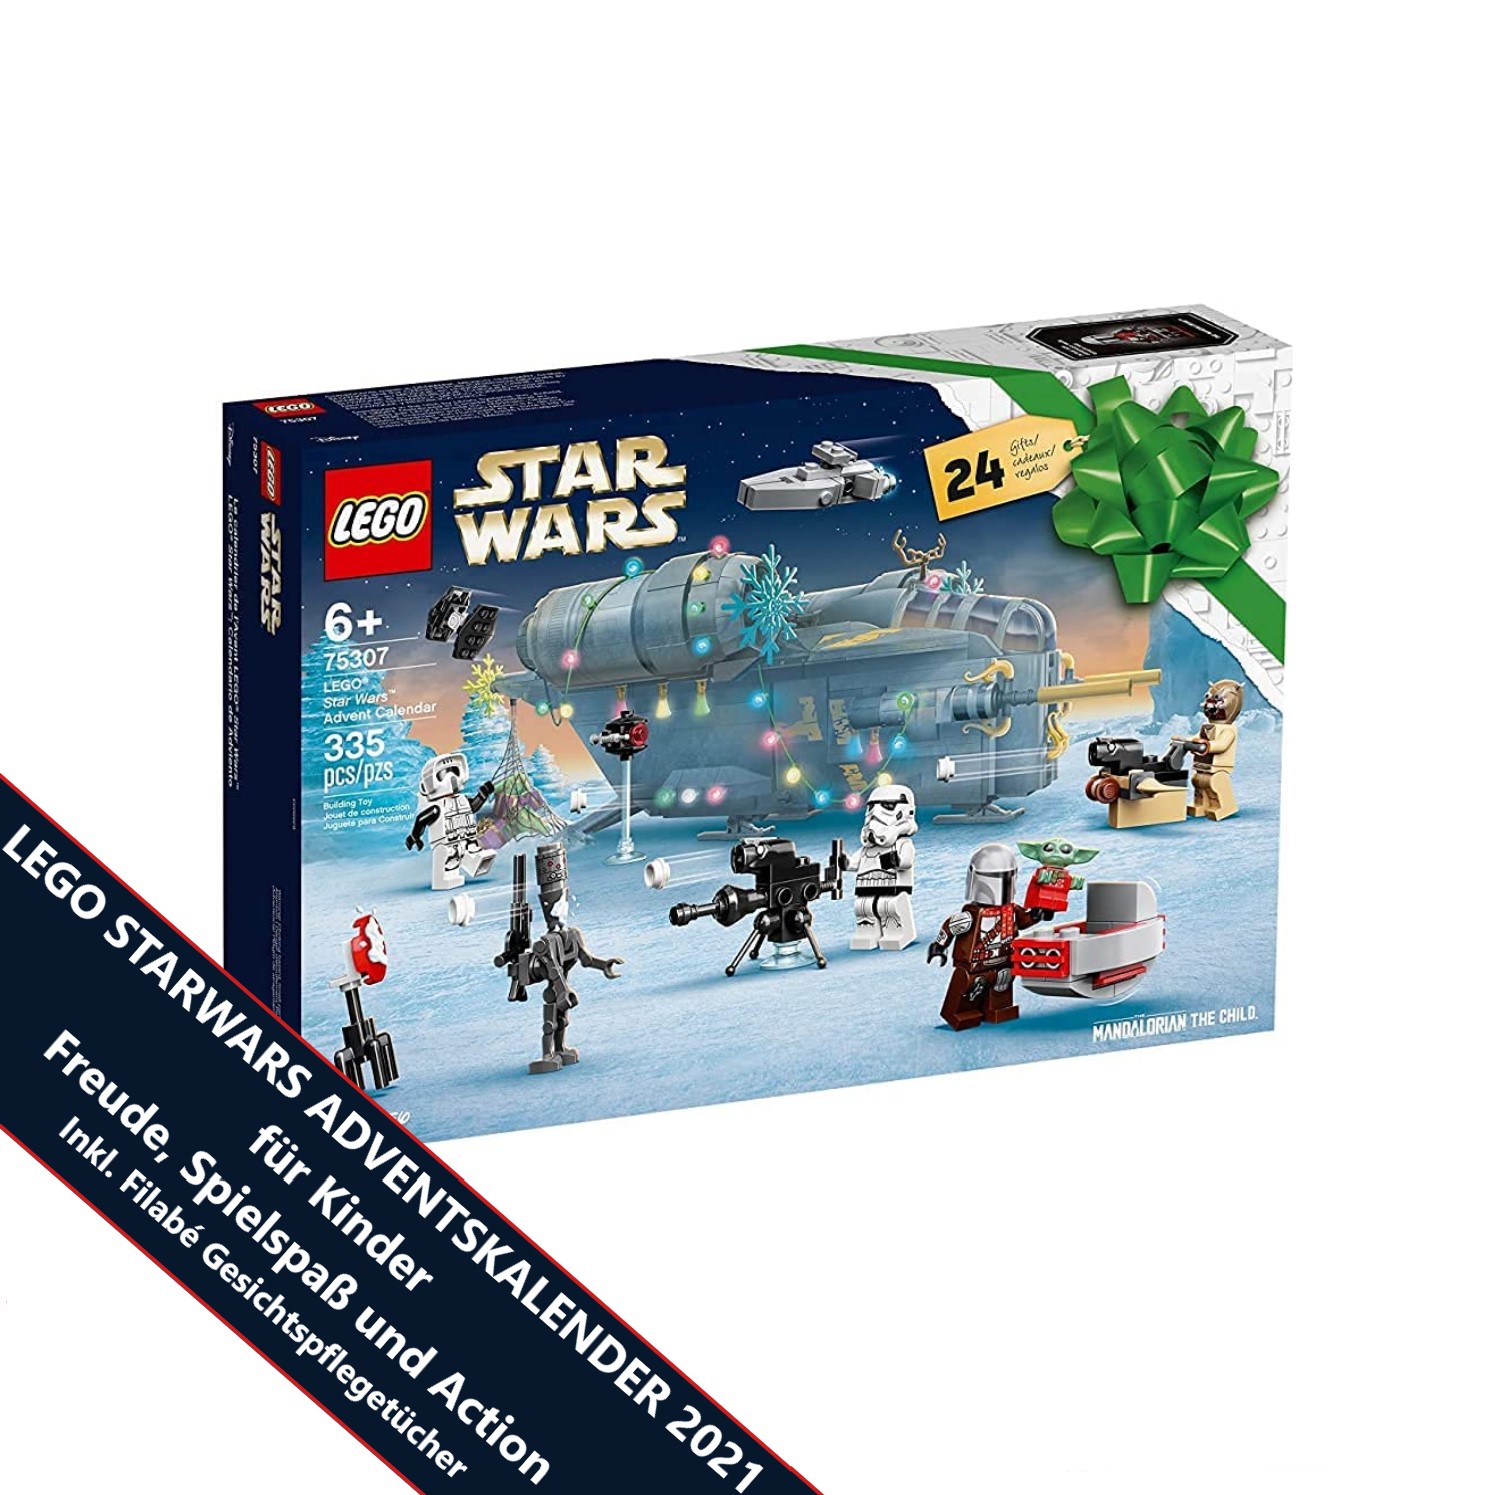 LEGO 75307 Star Wars Adventskalender 2021 - Spielzeug Advent Kalender für Kinder